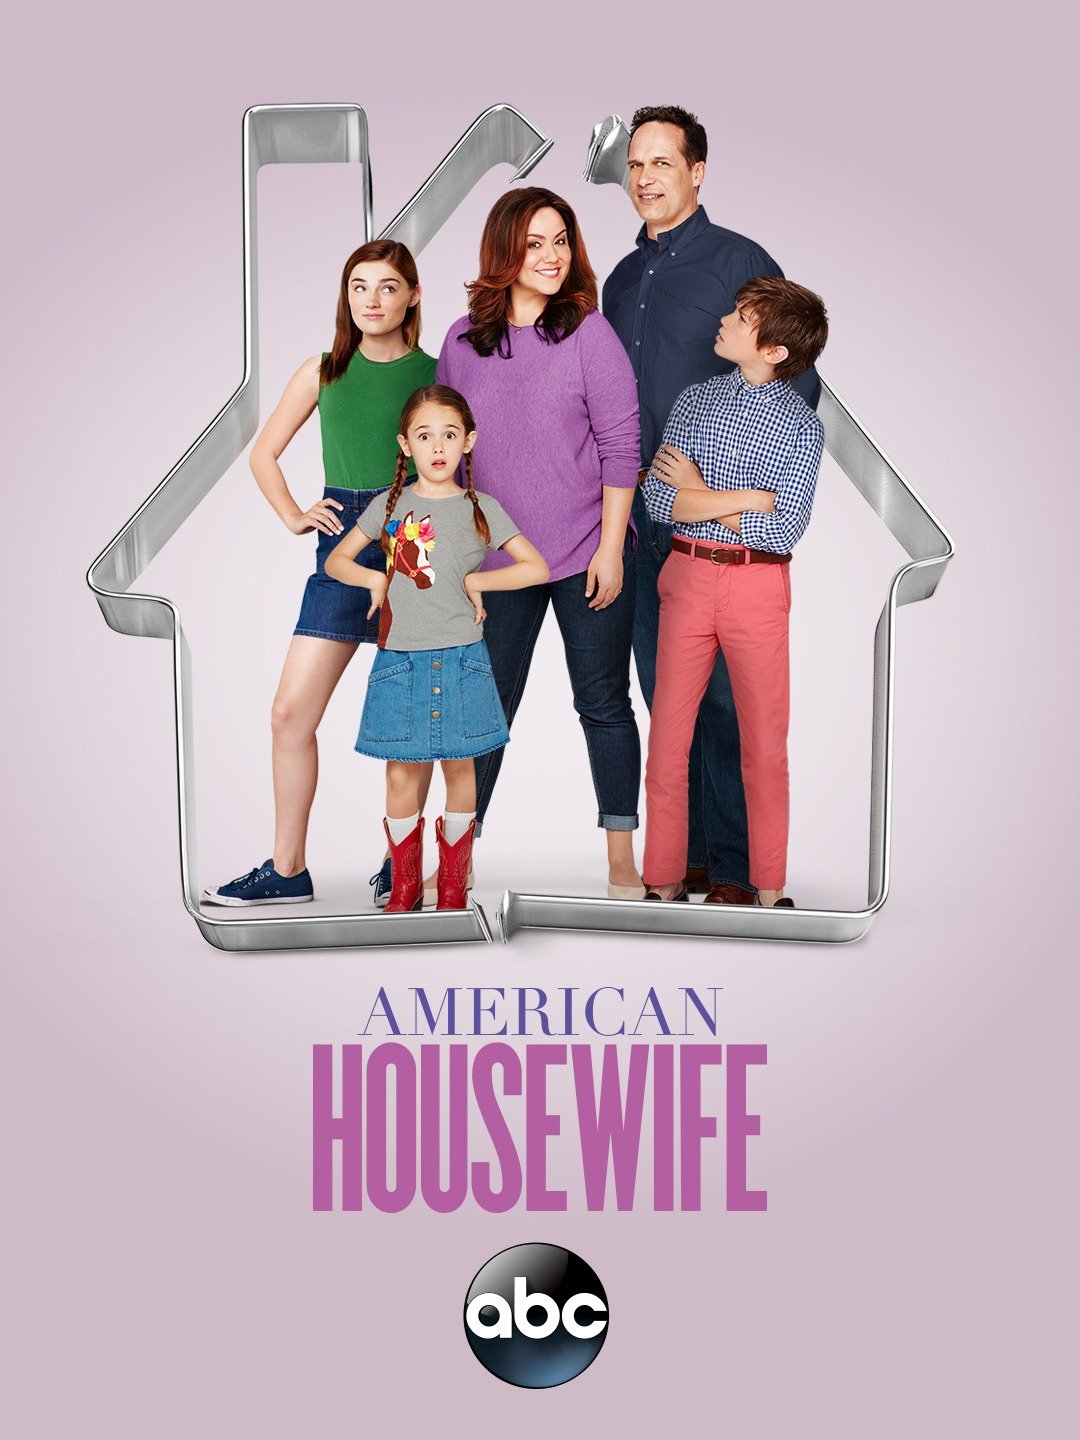 American Housewife Season 1, Episode 1